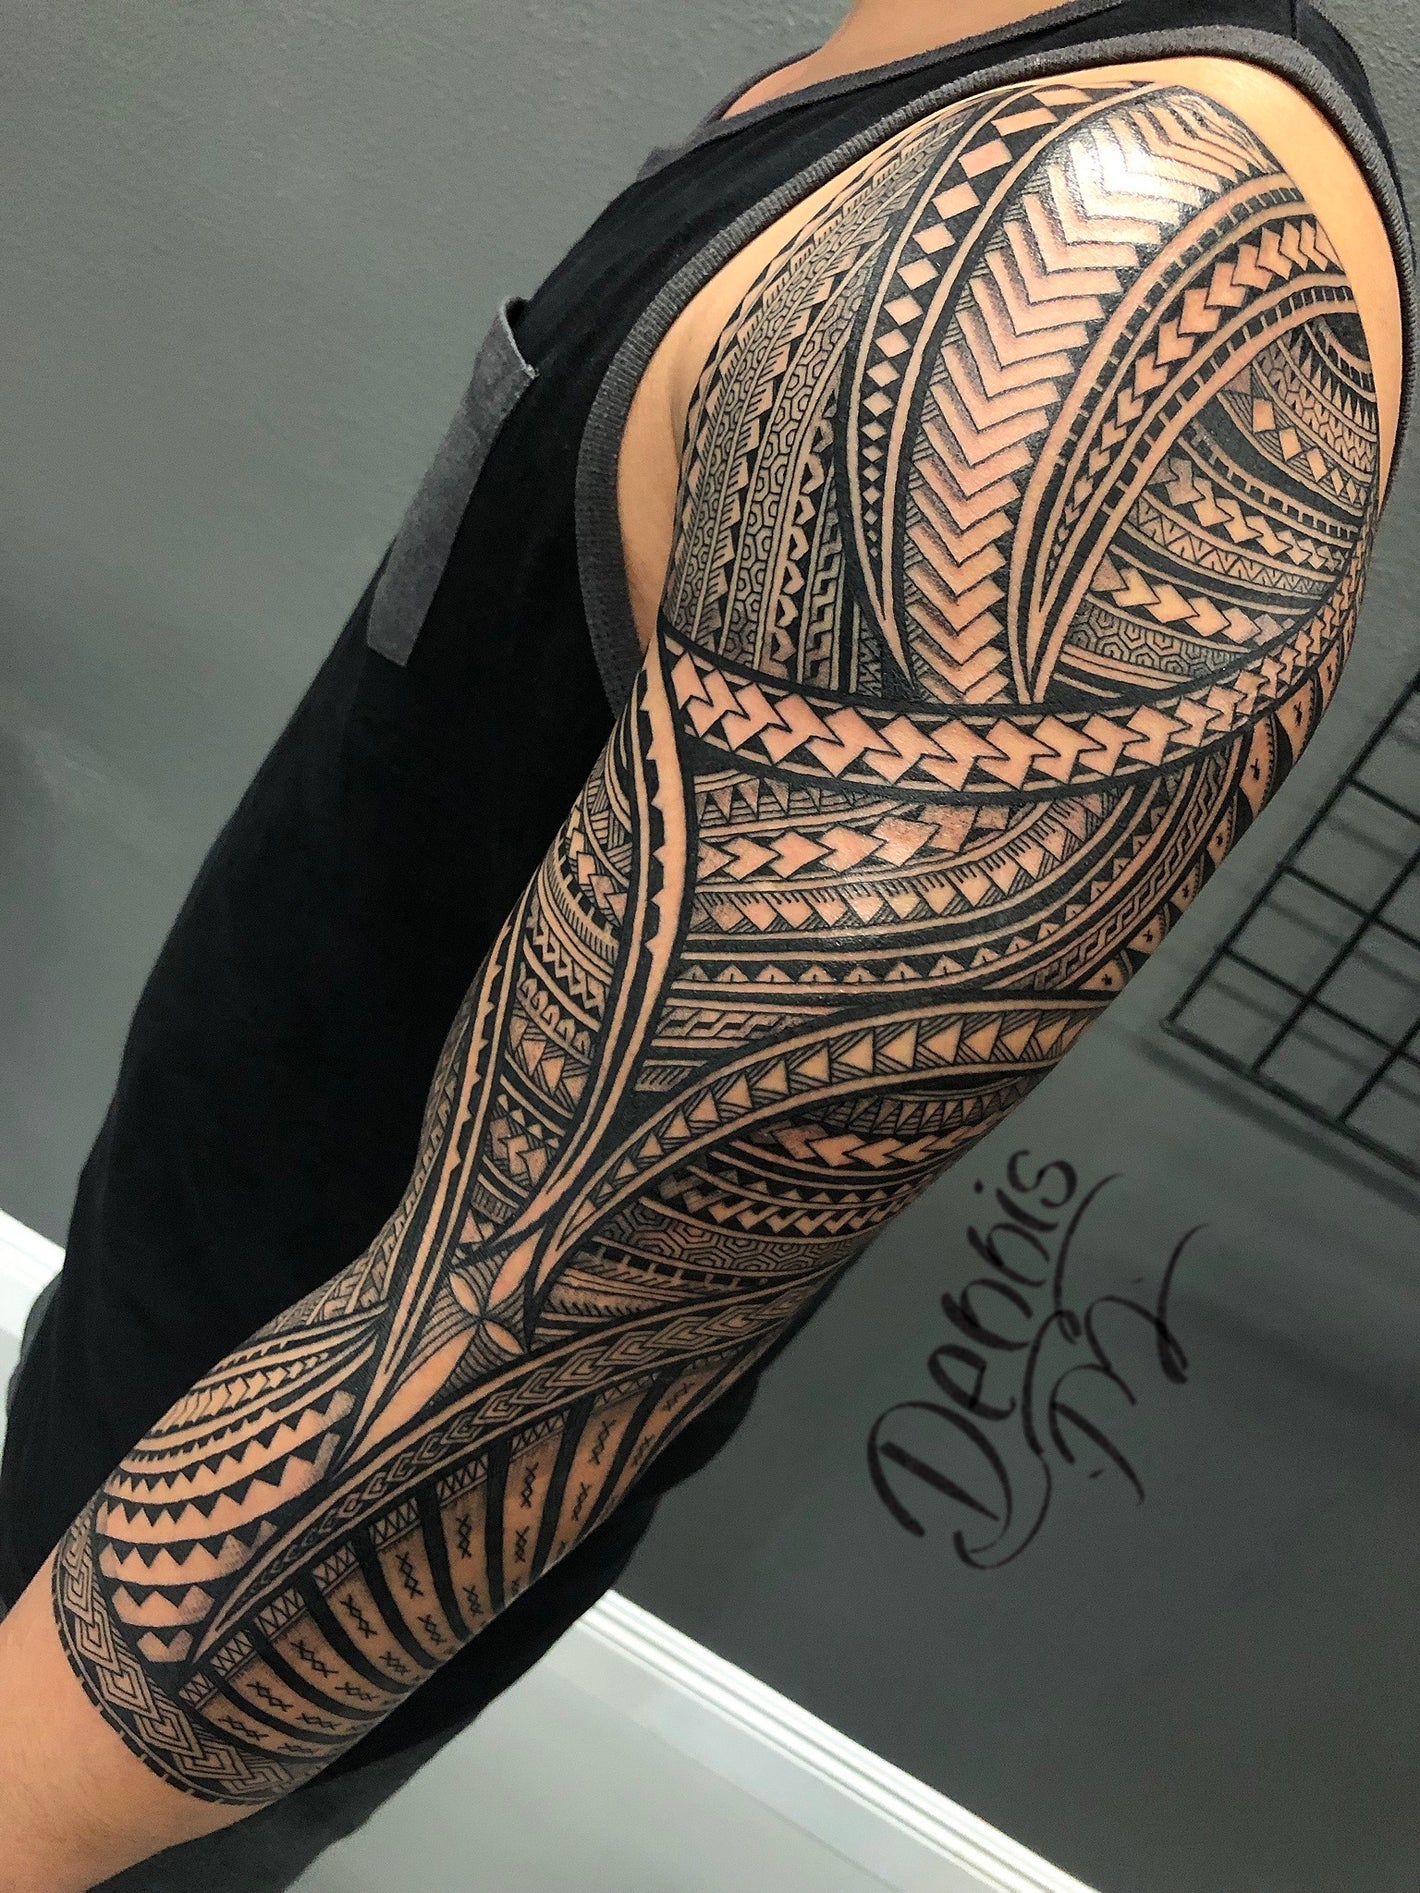 tattoo sleevesacred tatau studio in las vegas. samoan style. polynesian tatau. vegas tatau. sacred tatau. tattoo studio las vegas. samoan art. hawaiian tattoo. tongan tattoo. tahitian tattoo. tribal tattoo. meaningful tattoos. best tatau. maori tattoo. ta